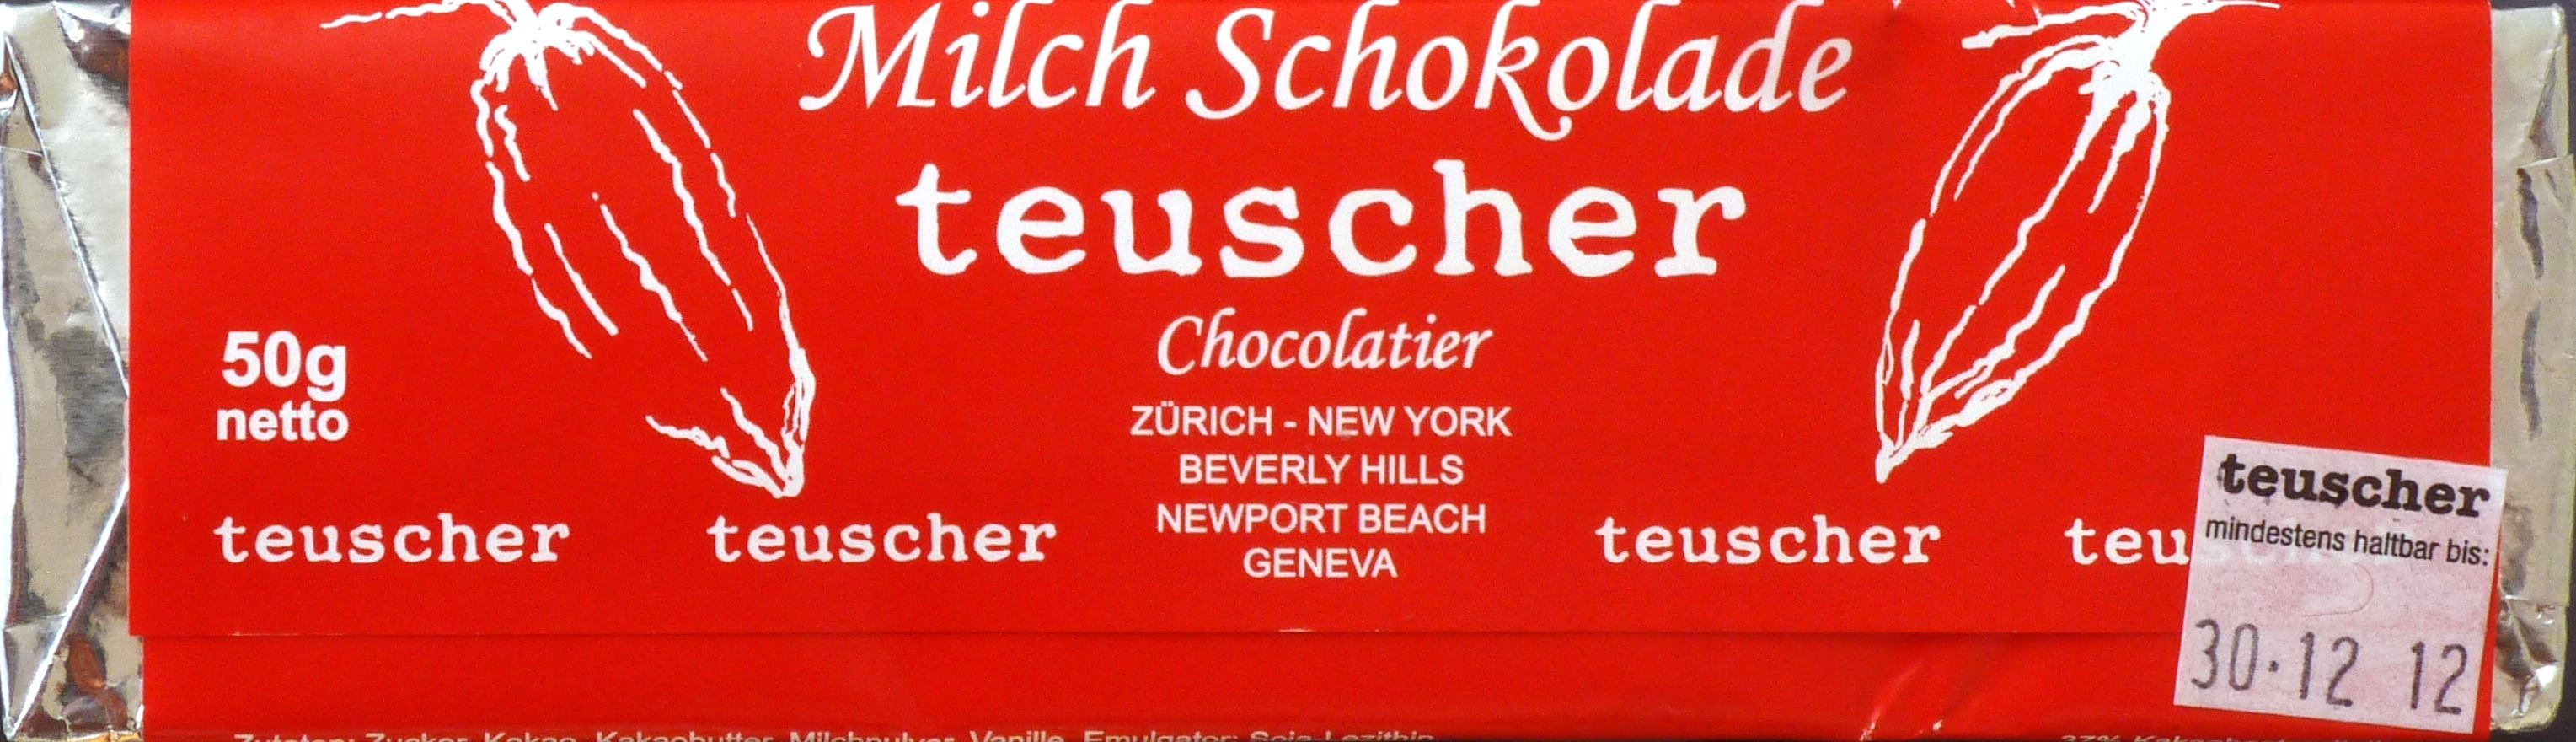 Teuscher, Schweizer Milchschokolade (Rückseite)